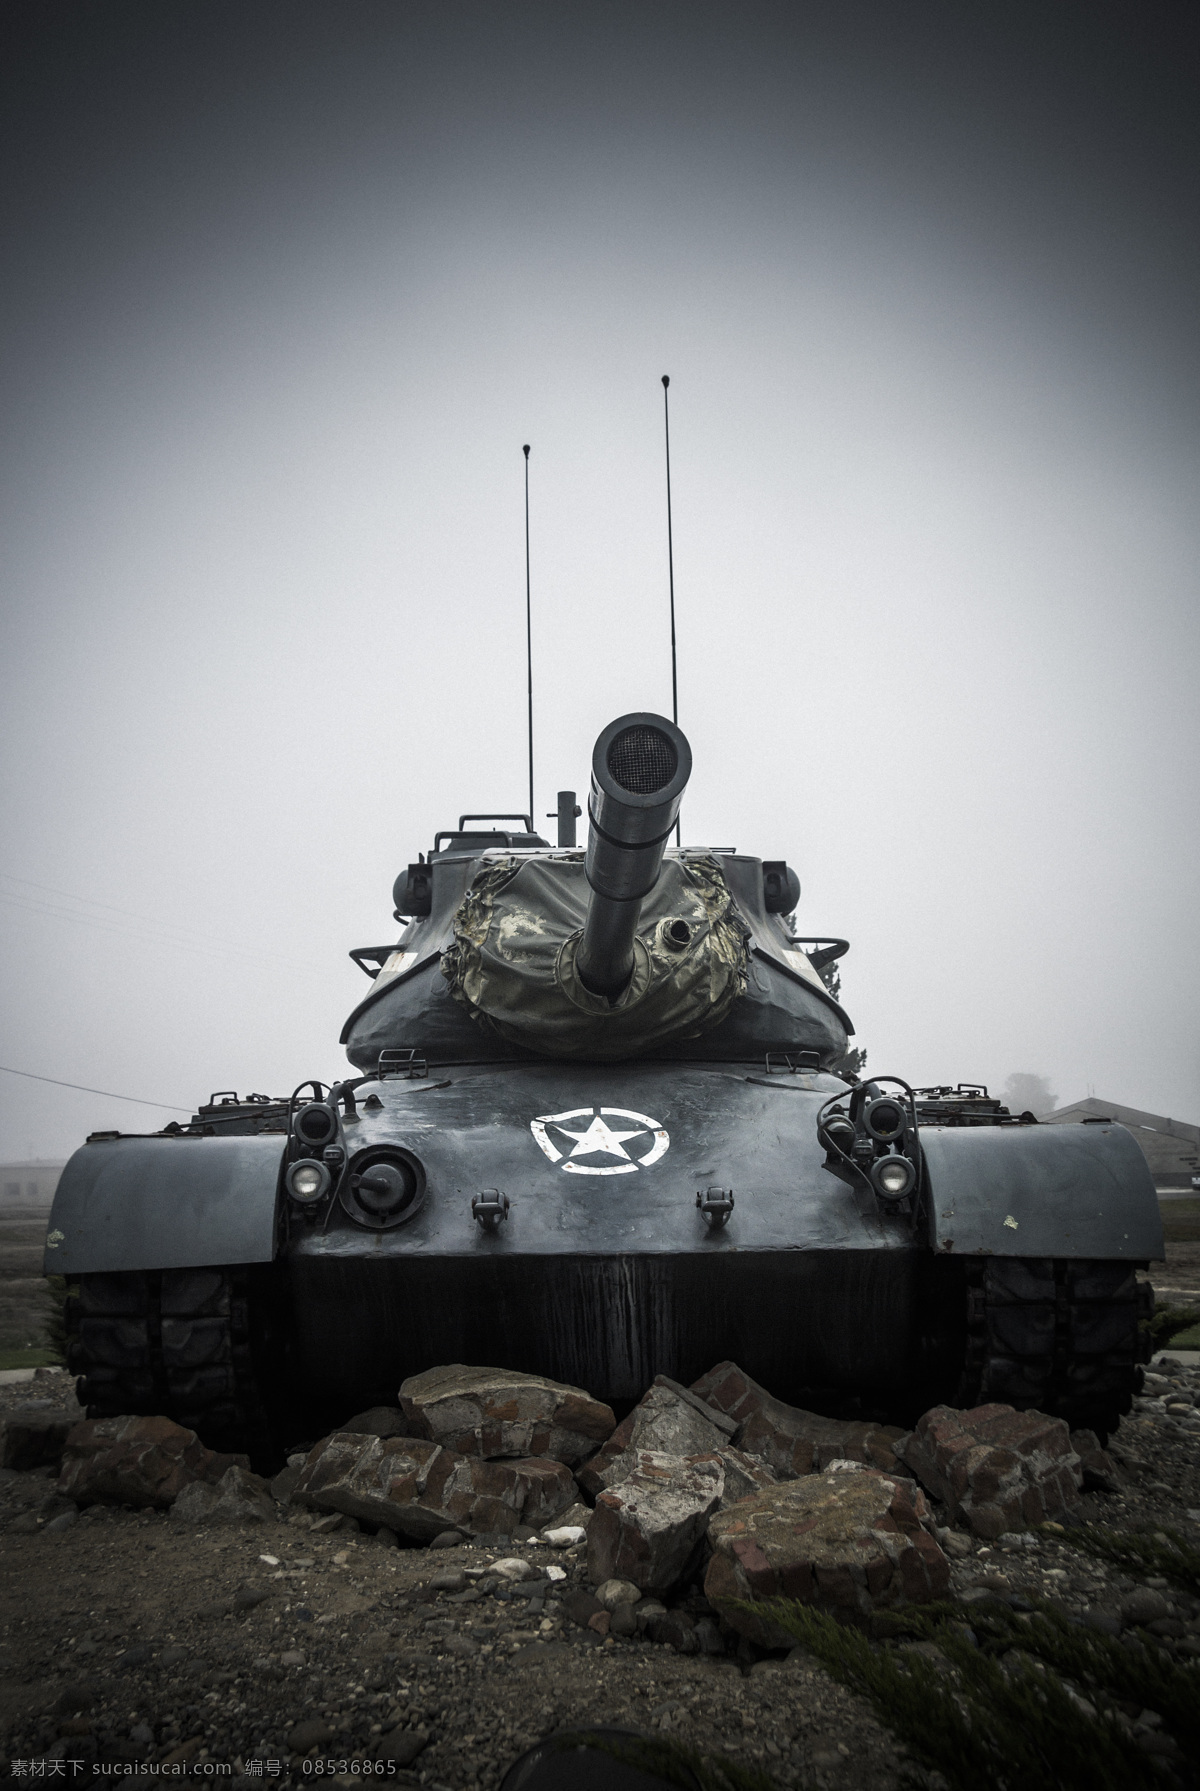 坦克 装甲车 坦克车 军事武装 军事装备 现代武器装备 军事武器 现代科技